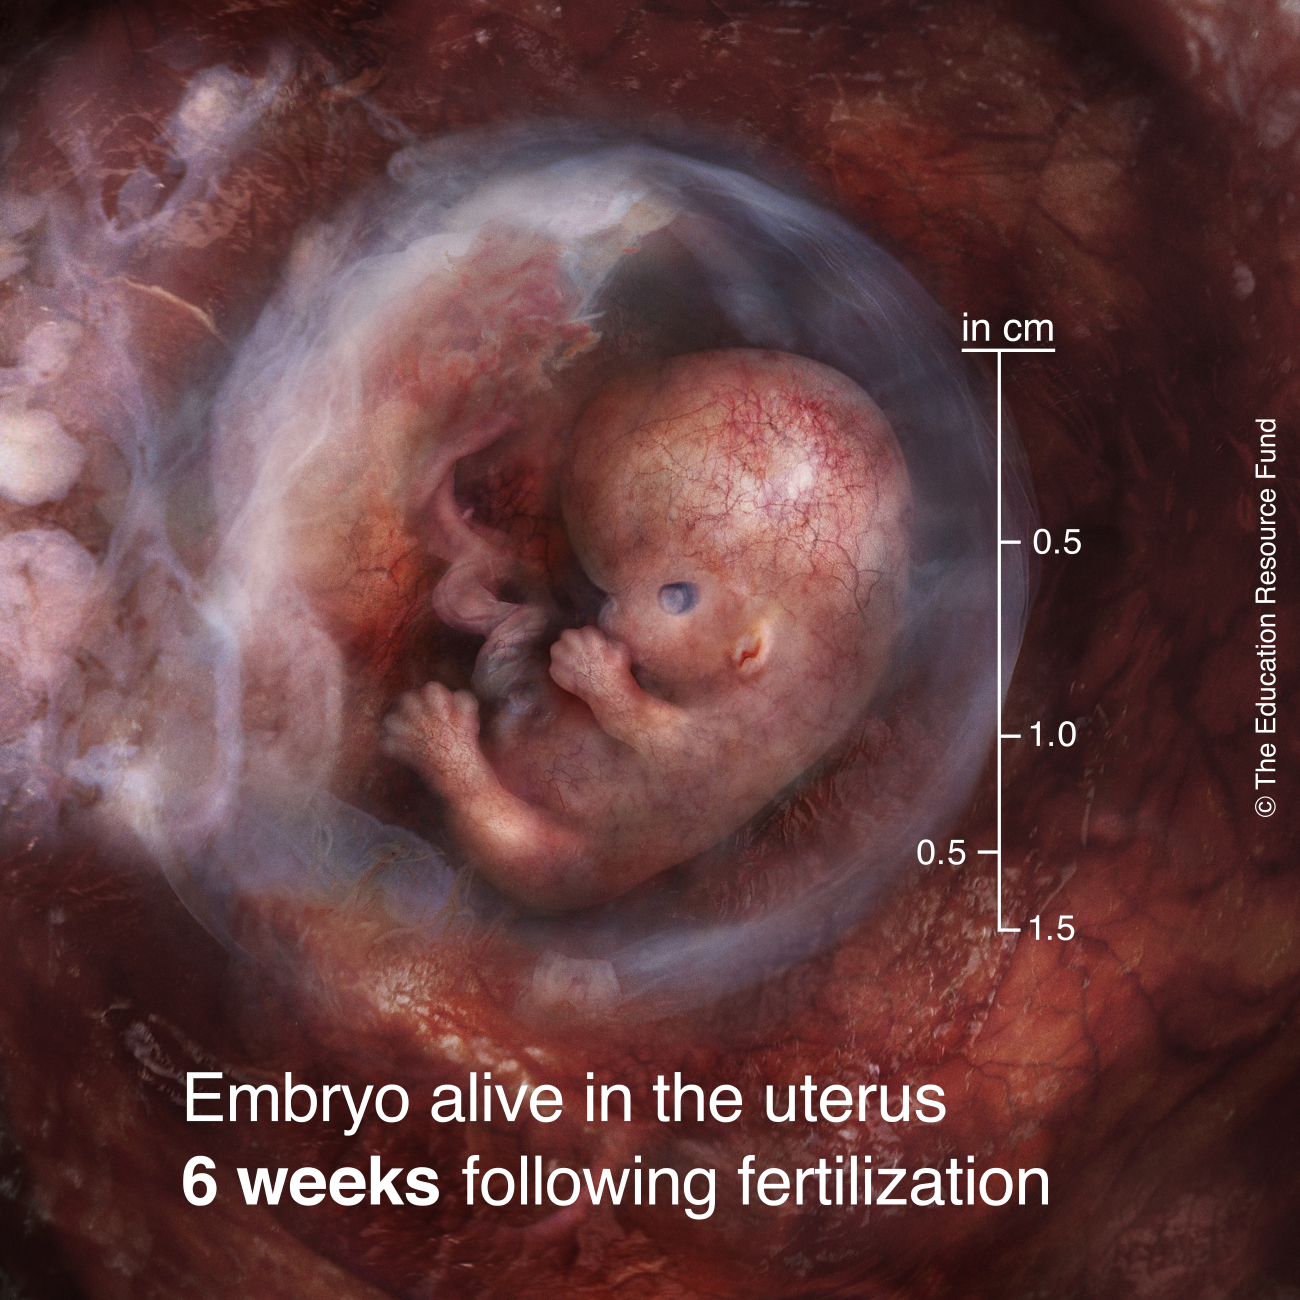 Embryo alive in the uterus 6 weeks following fertilization